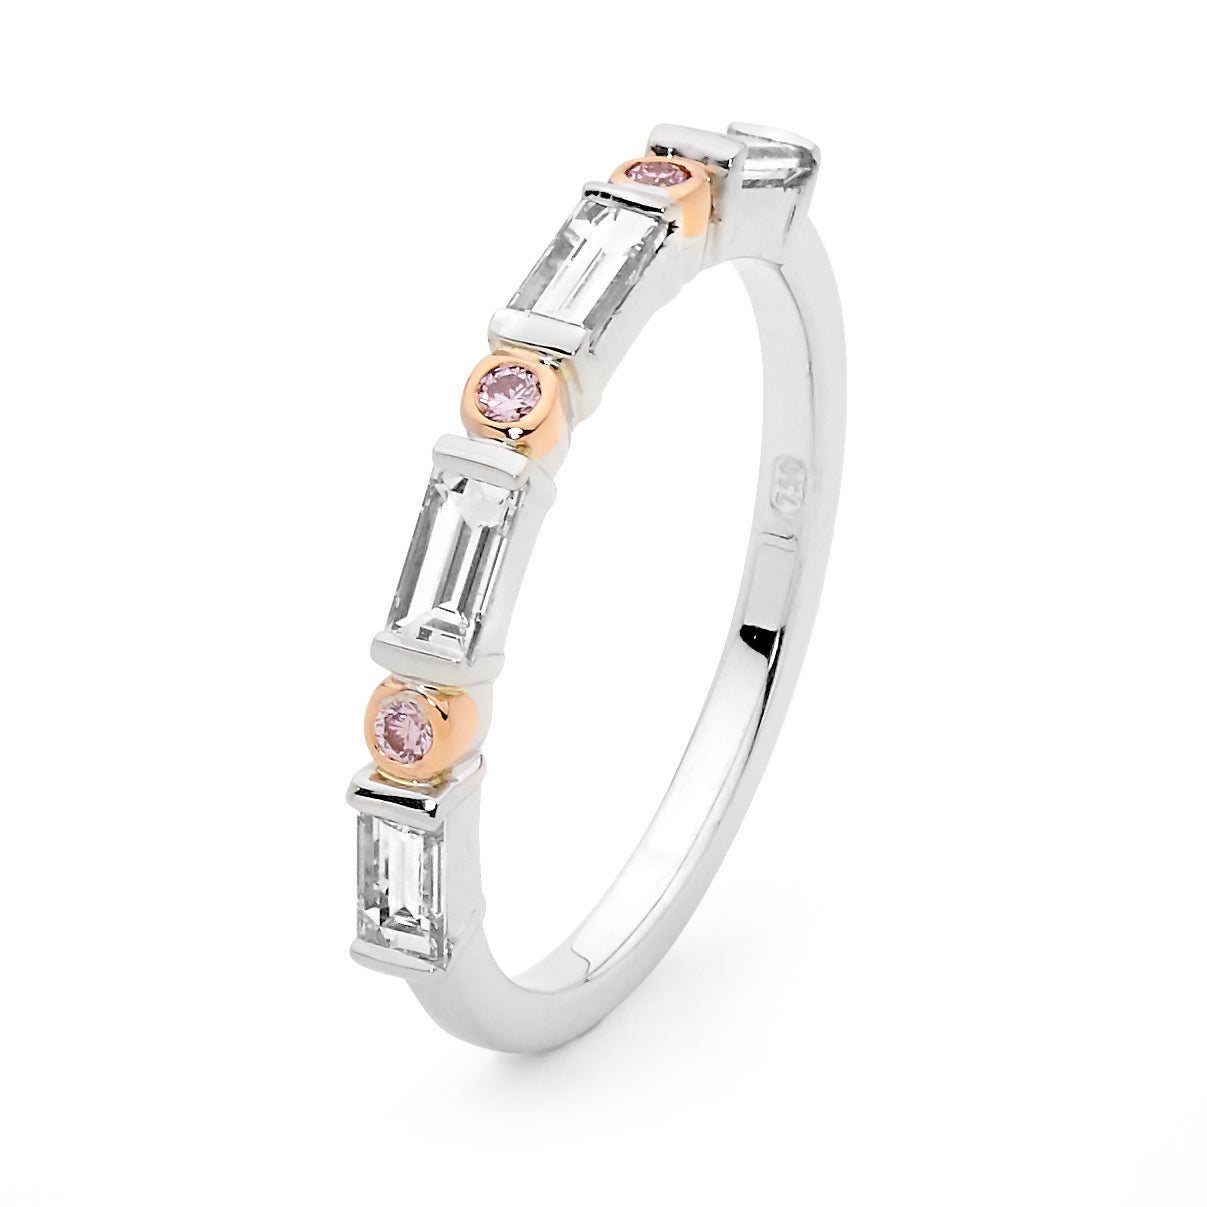 18ct white gold Pink Diamond wedding ring